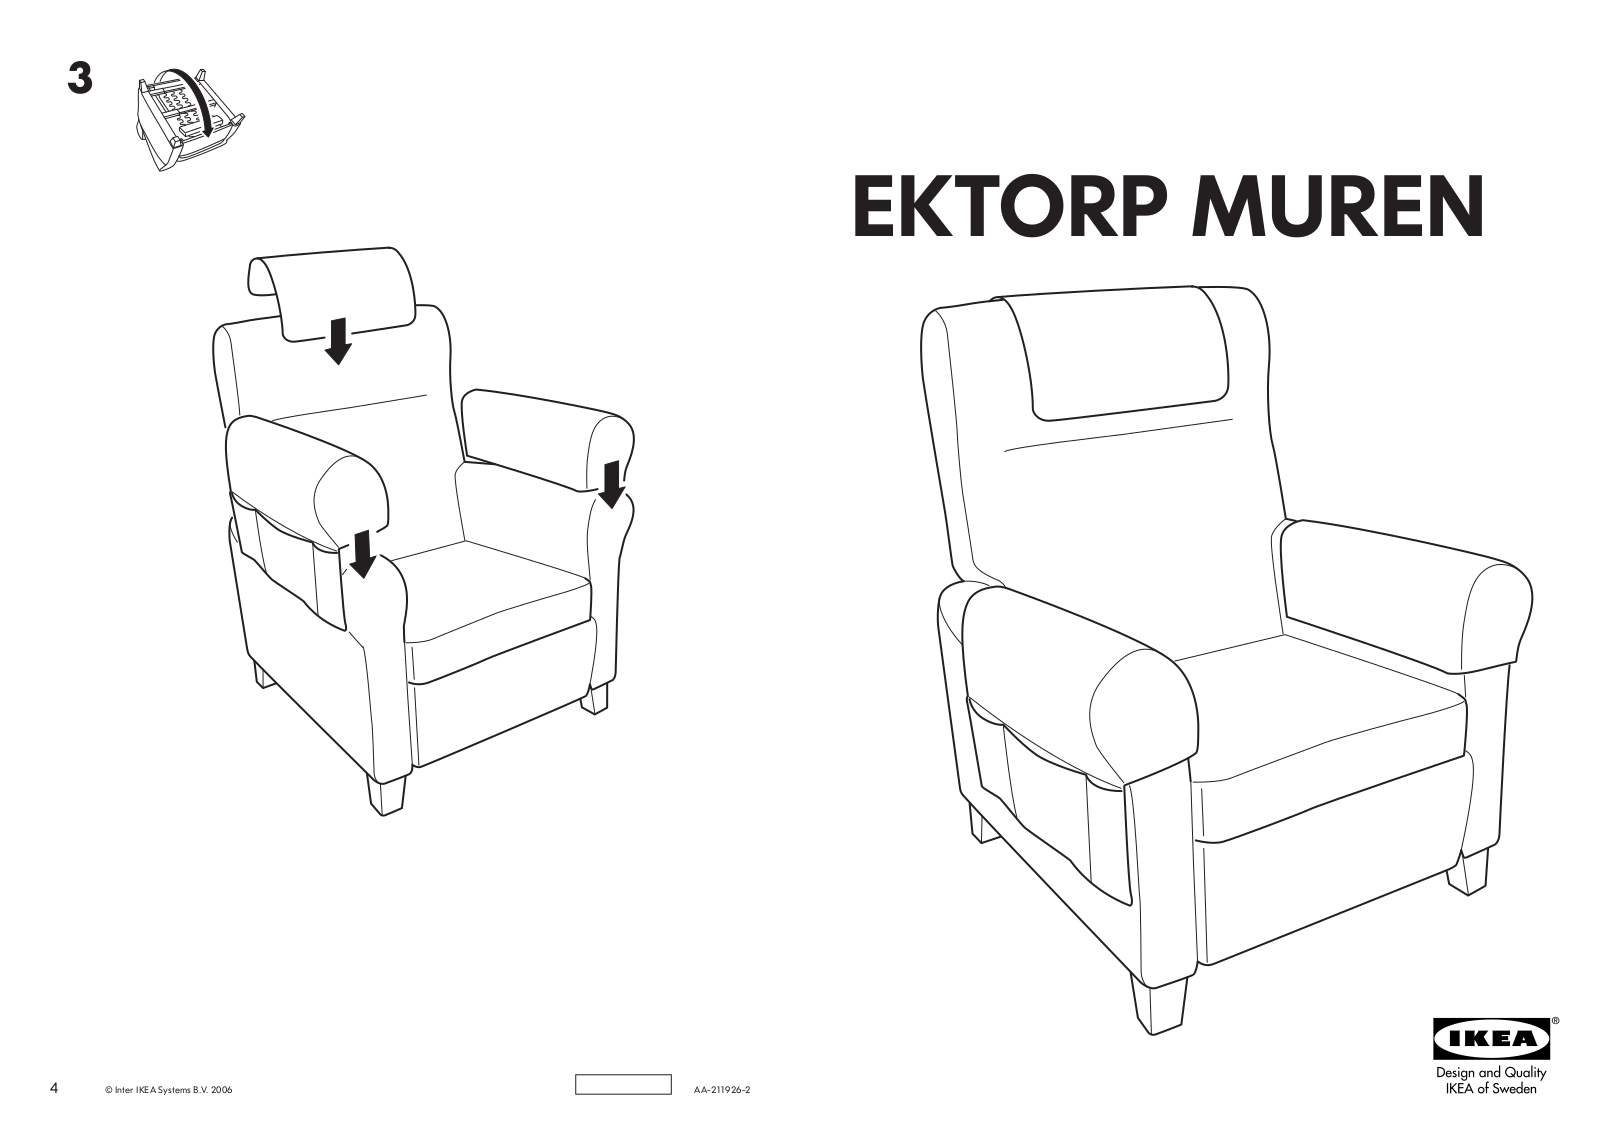 IKEA EKTORP MUREN RECLINER Assembly Instruction